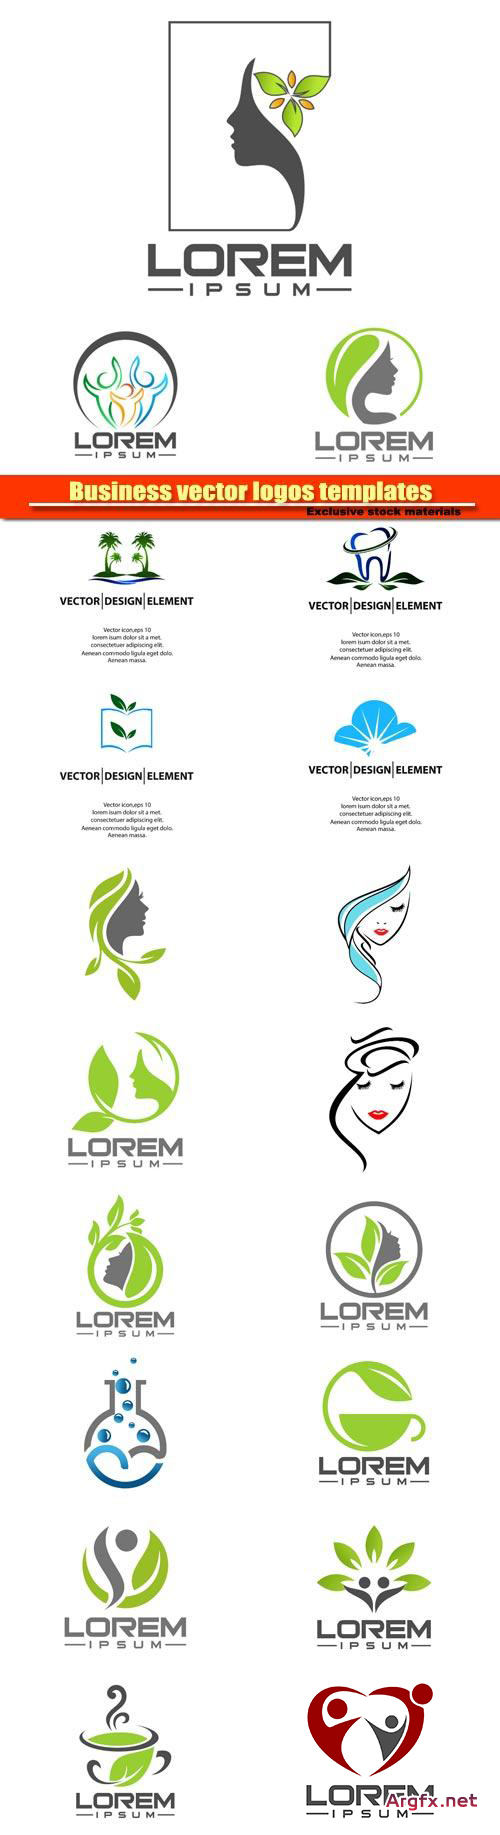 Business vector logos templates №10